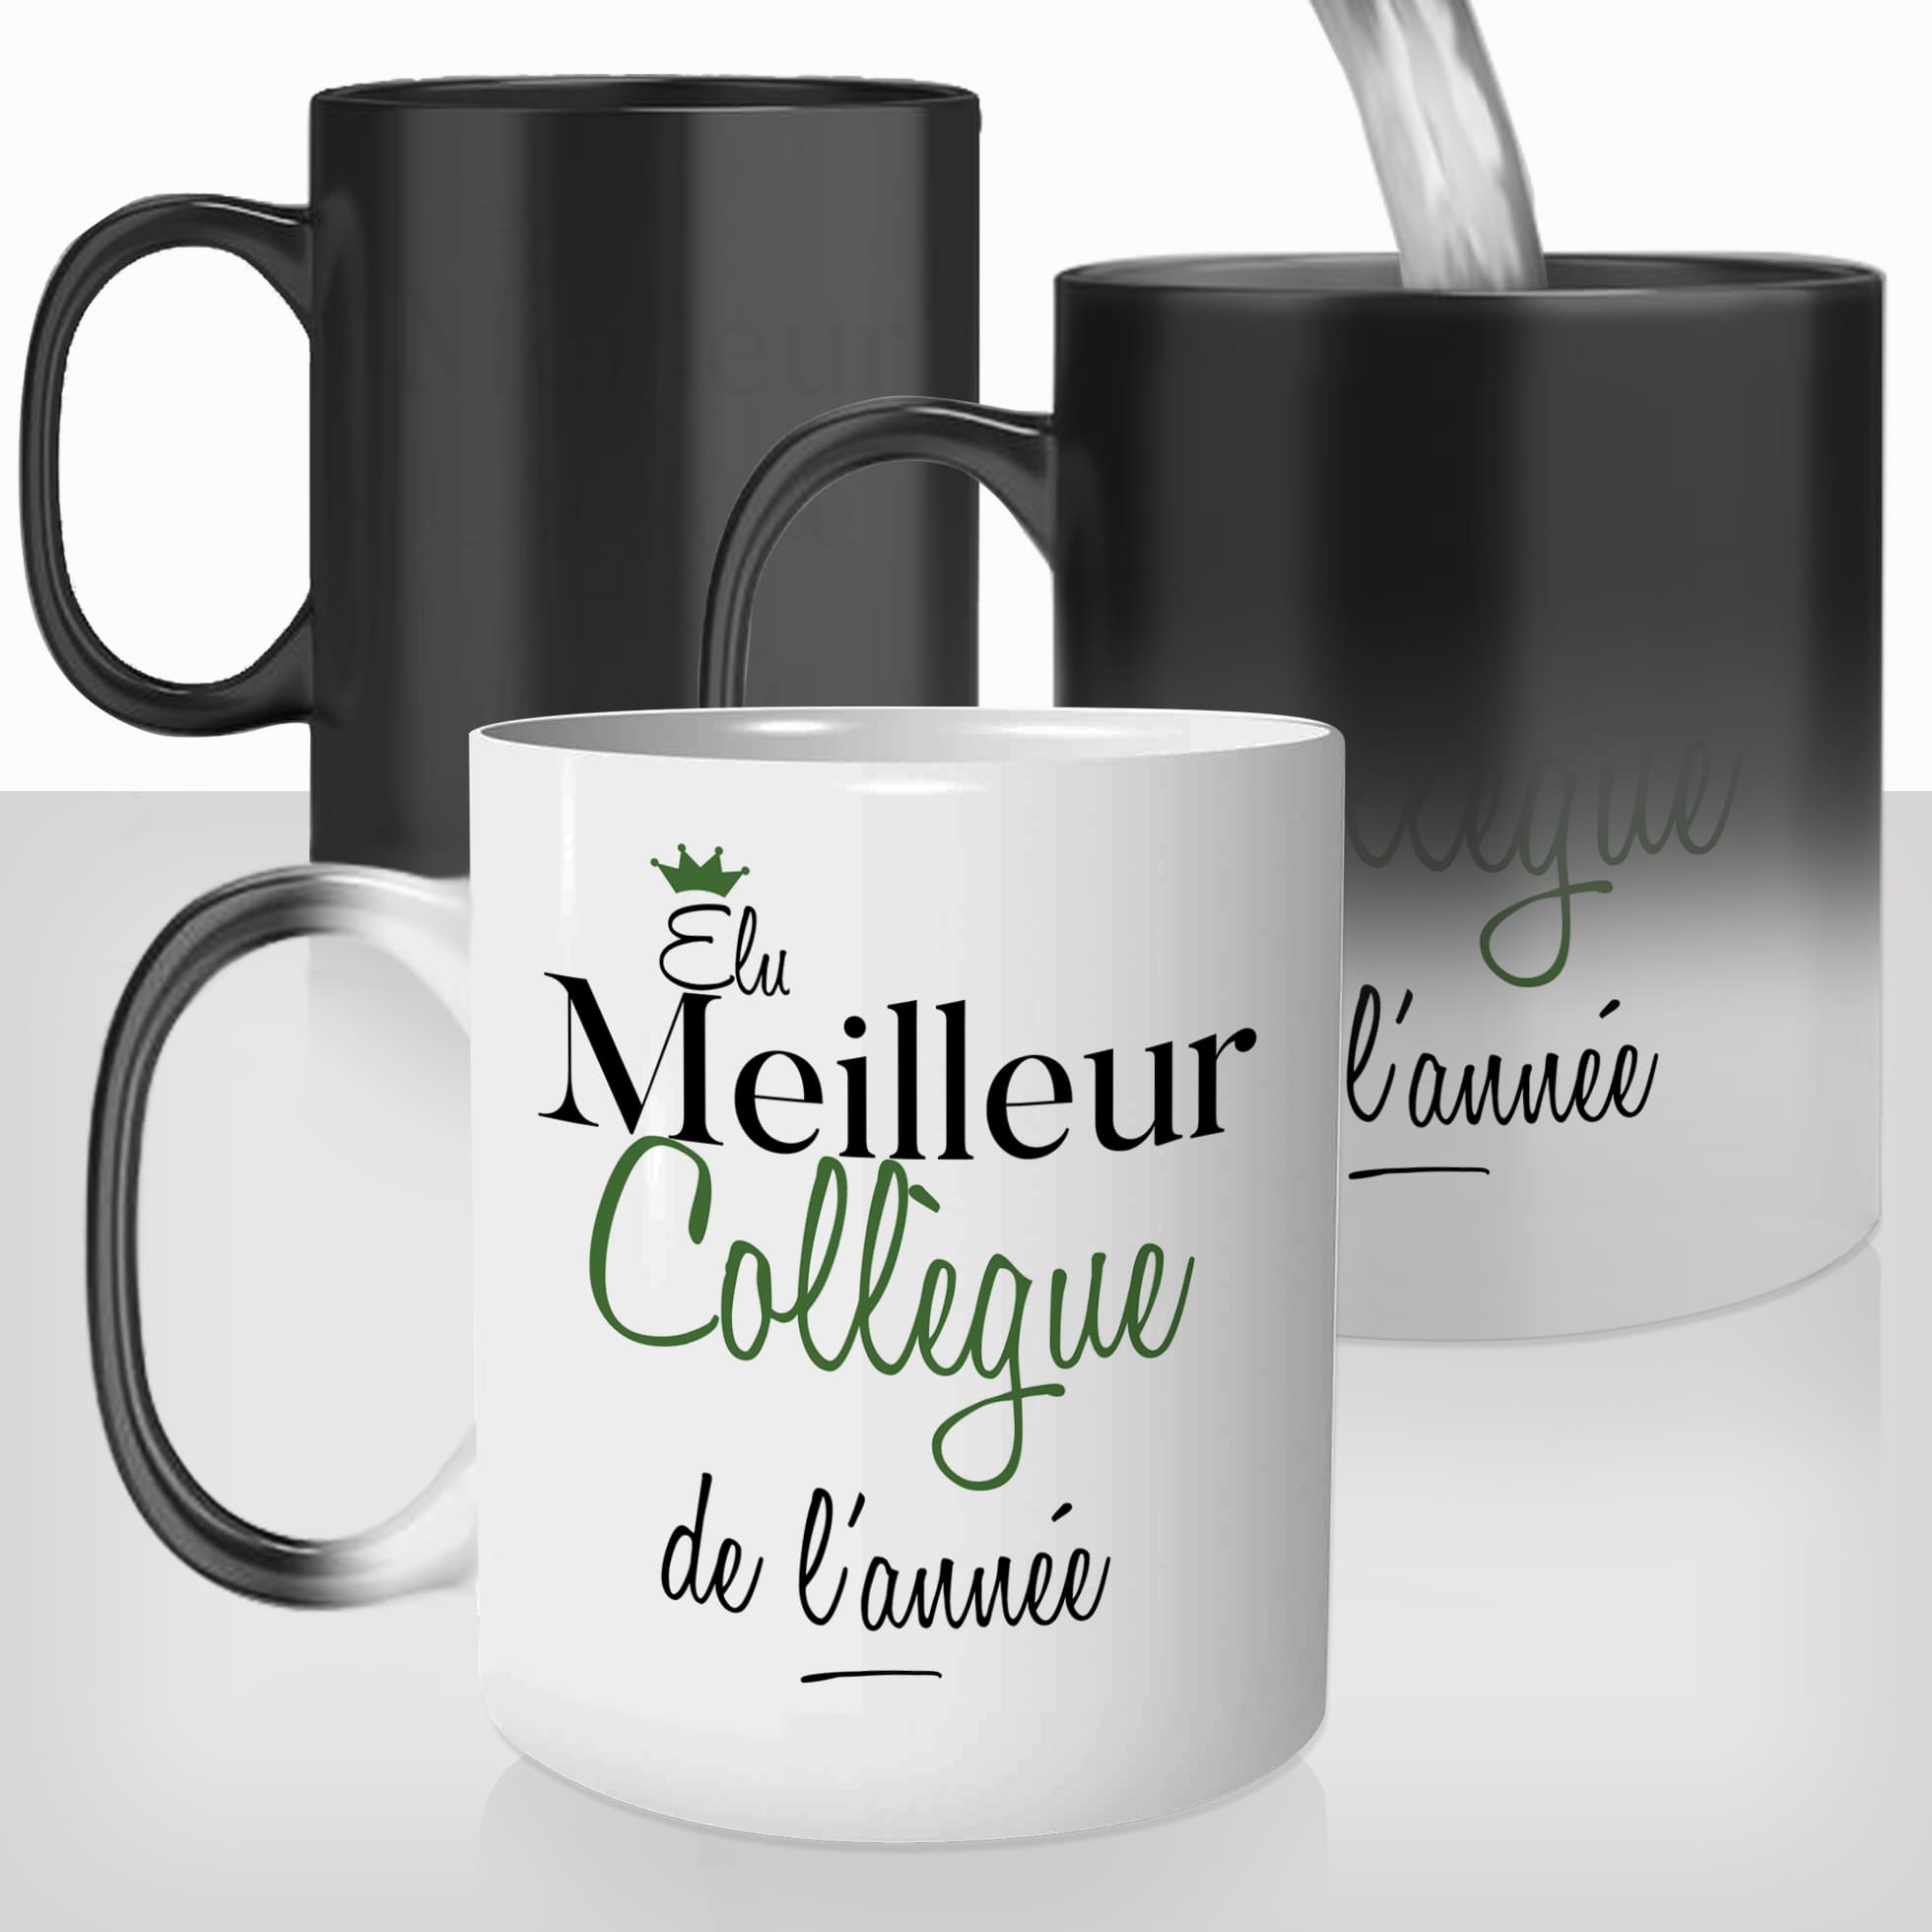 Mug Magique Elu Meilleur Collègue - Métiers/Collègue Mug-Magique